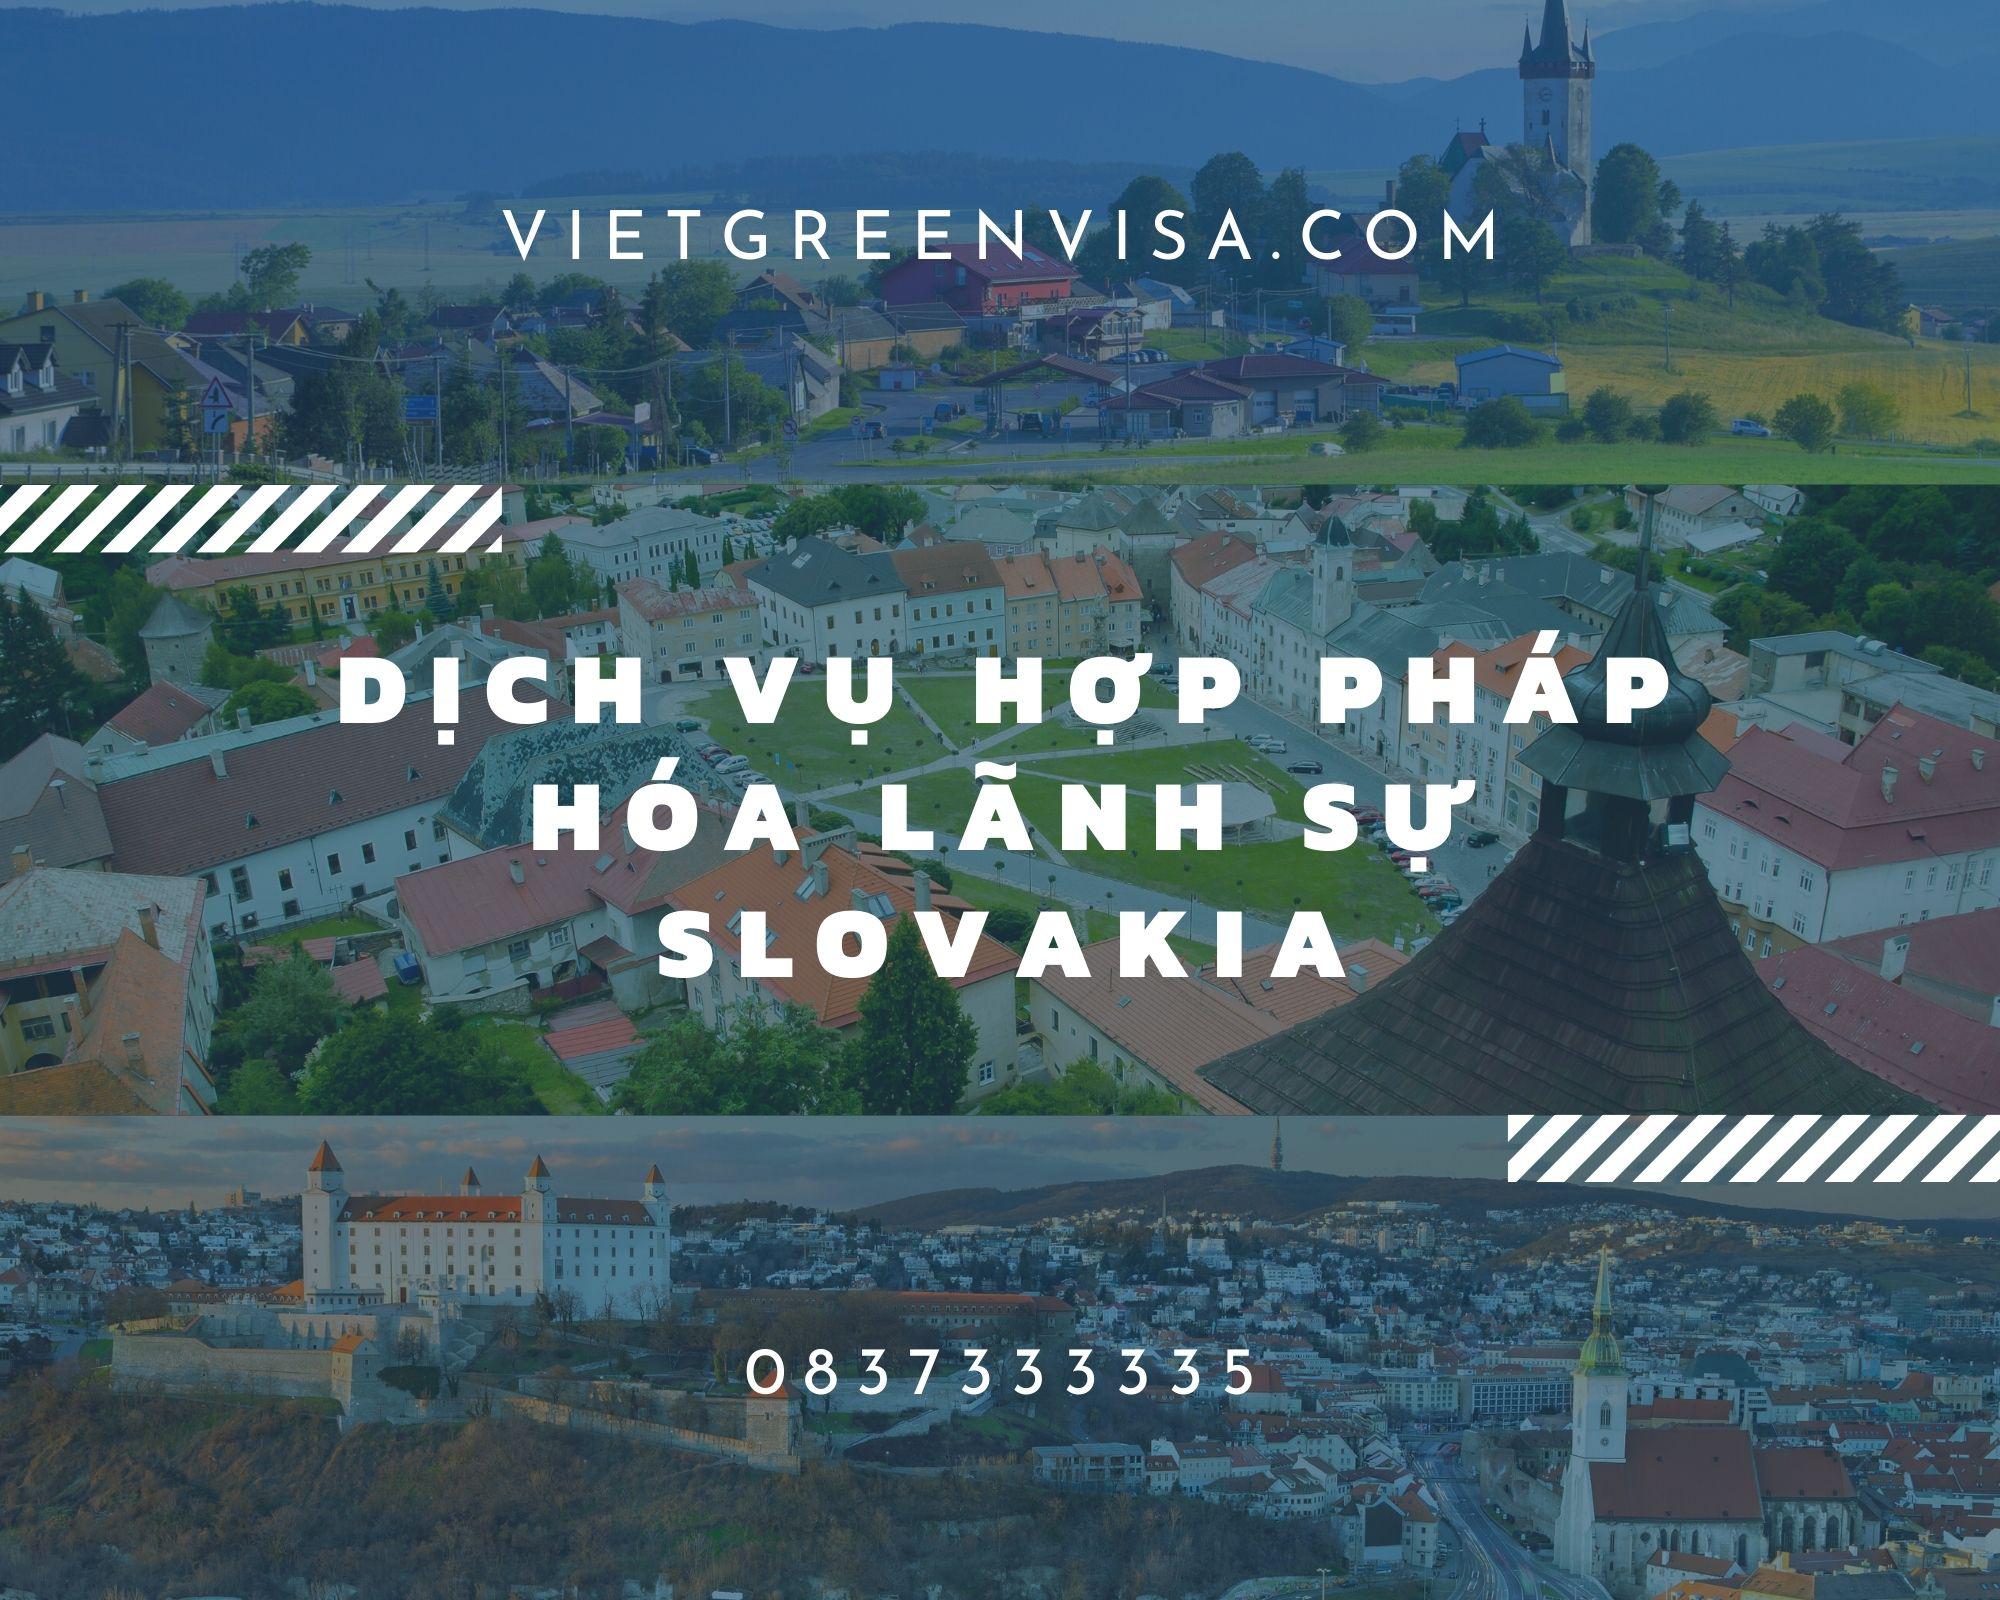  Dịch vụ hợp pháp lãnh sự giấy tờ tại Slovakia uy tín